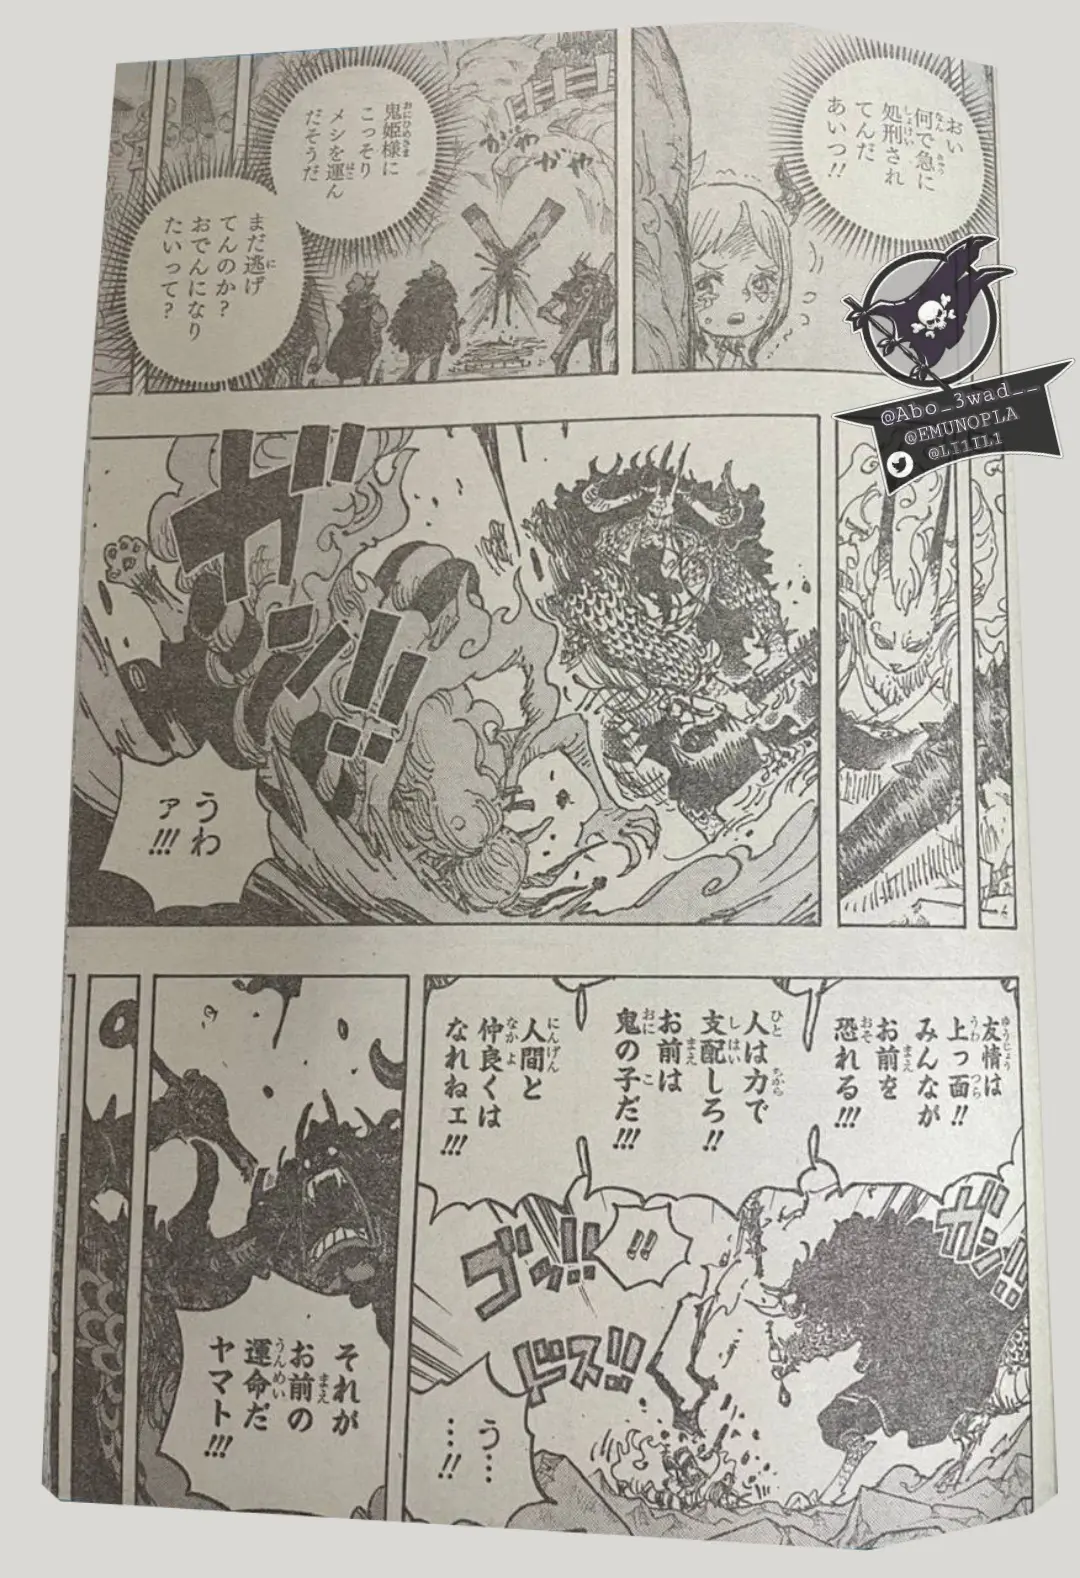 One Piece Manga 1025 Spoiler 007.jpg One Piece 1025 Spoilers: Luffy & Yamato Vs Kaido!